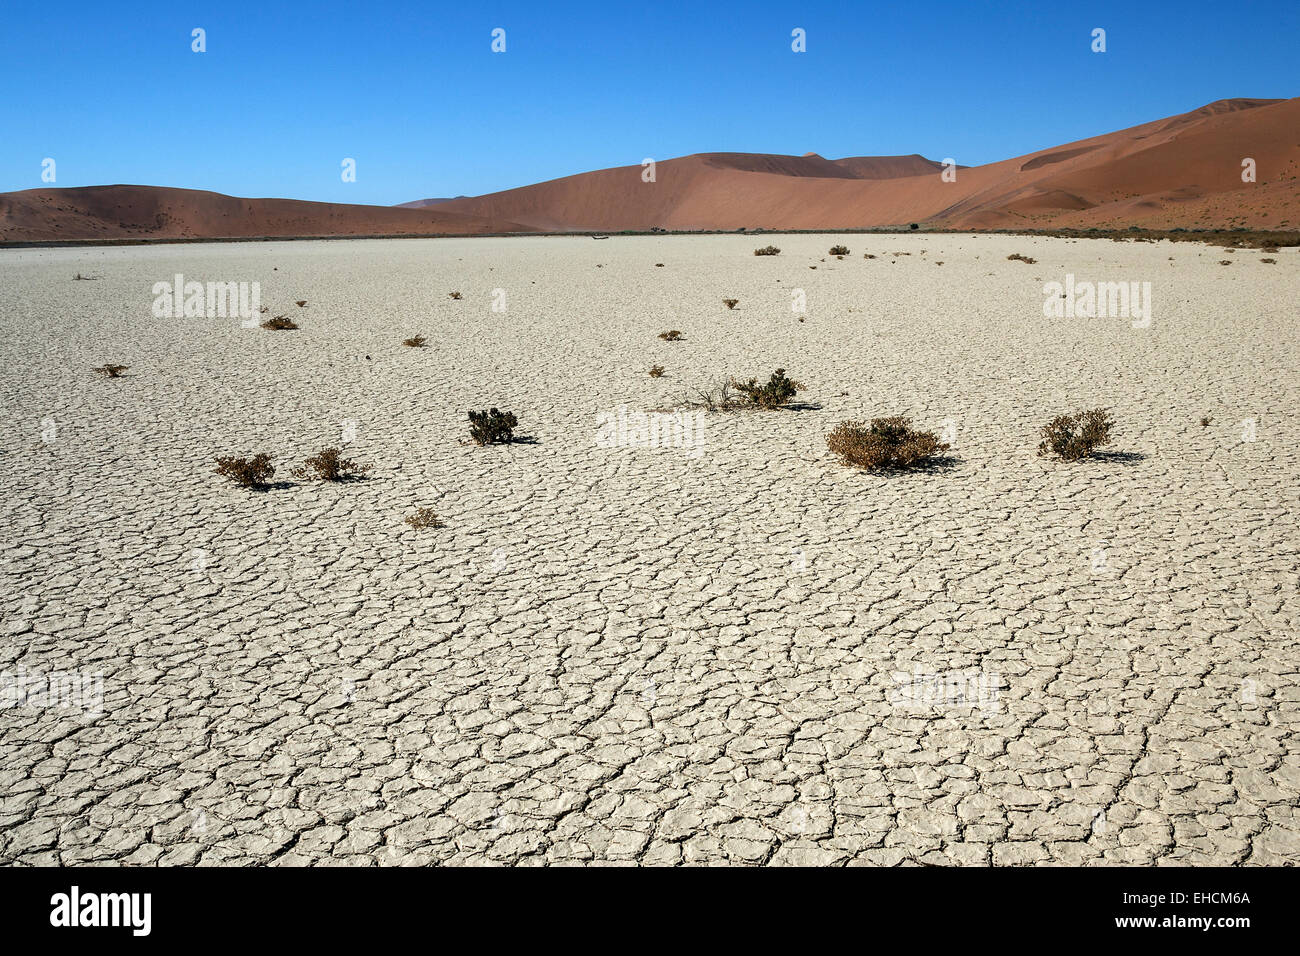 Hidden Vlei, salt and clay pan, sand dunes, Namib Desert, Namib Naukluft Park, Namibia Stock Photo